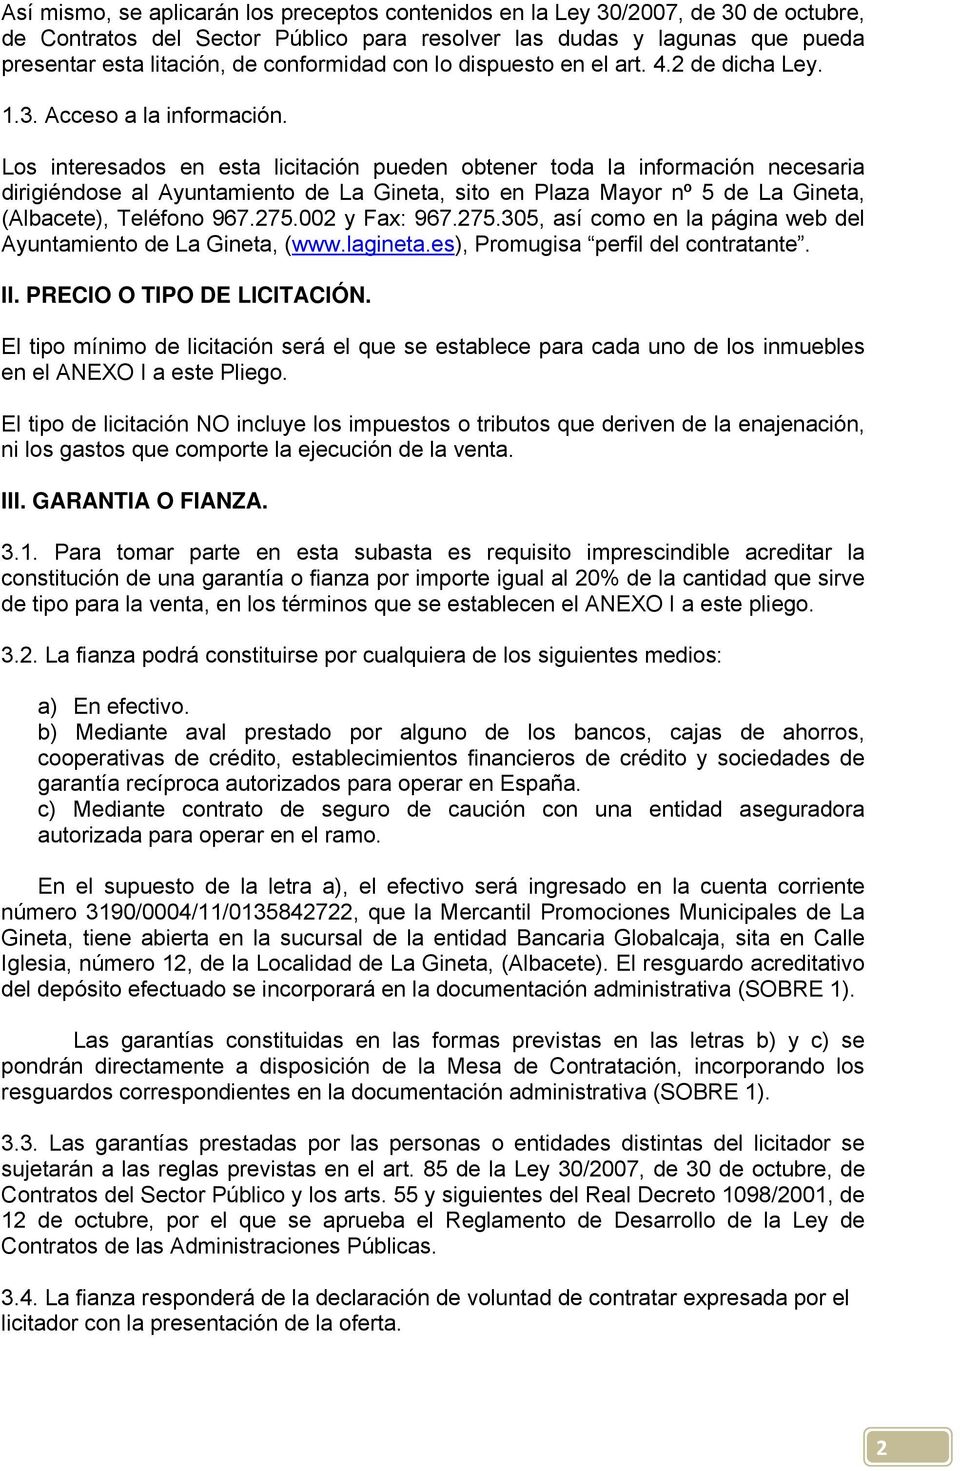 Los interesados en esta licitación pueden obtener toda la información necesaria dirigiéndose al Ayuntamiento de La Gineta, sito en Plaza Mayor nº 5 de La Gineta, (Albacete), Teléfono 967.275.